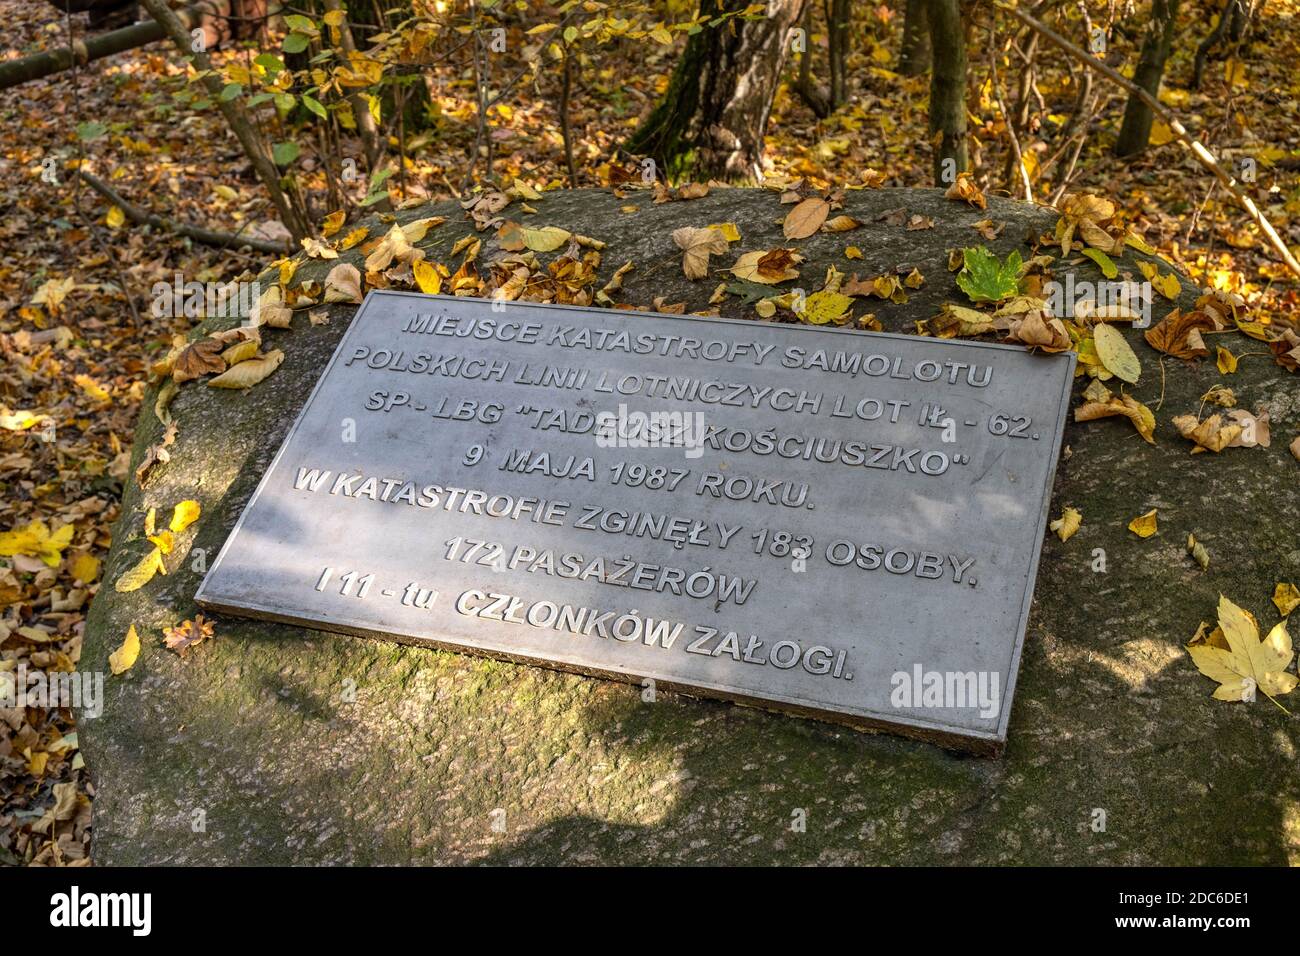 Varsavia, Mazovia / Polonia - 2019/10/20: Volo aereo 5055 crash memoriale presso il sito dell'incidente aereo effettivo del 9 maggio 1987 a Las Kabacki Forest i Foto Stock